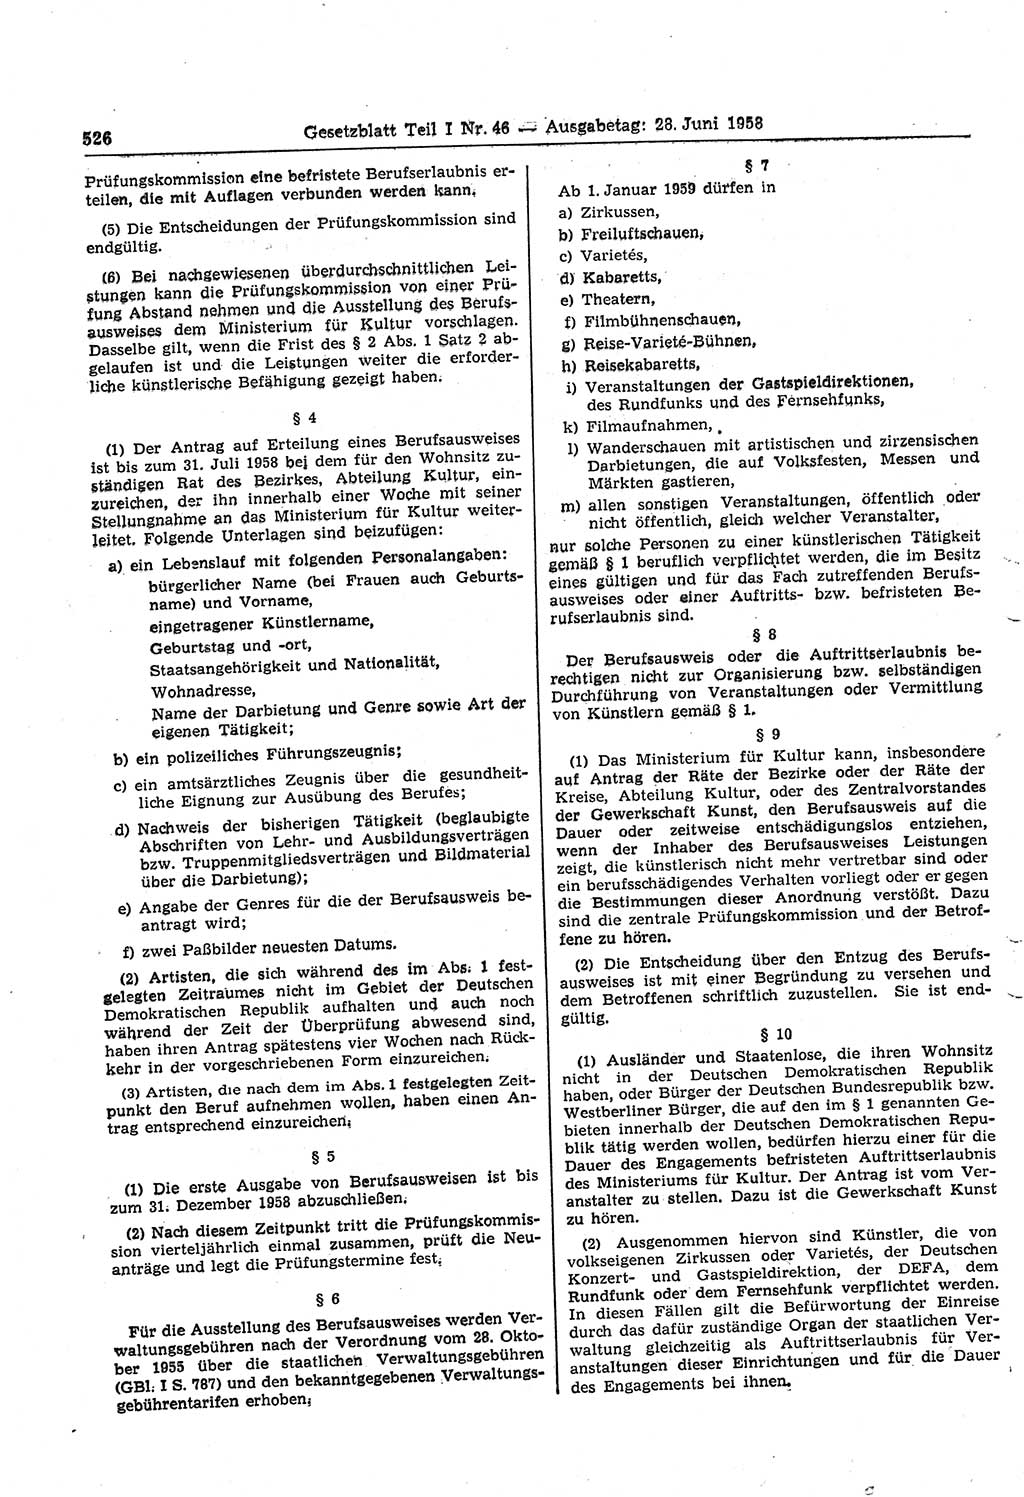 Gesetzblatt (GBl.) der Deutschen Demokratischen Republik (DDR) Teil Ⅰ 1958, Seite 526 (GBl. DDR Ⅰ 1958, S. 526)